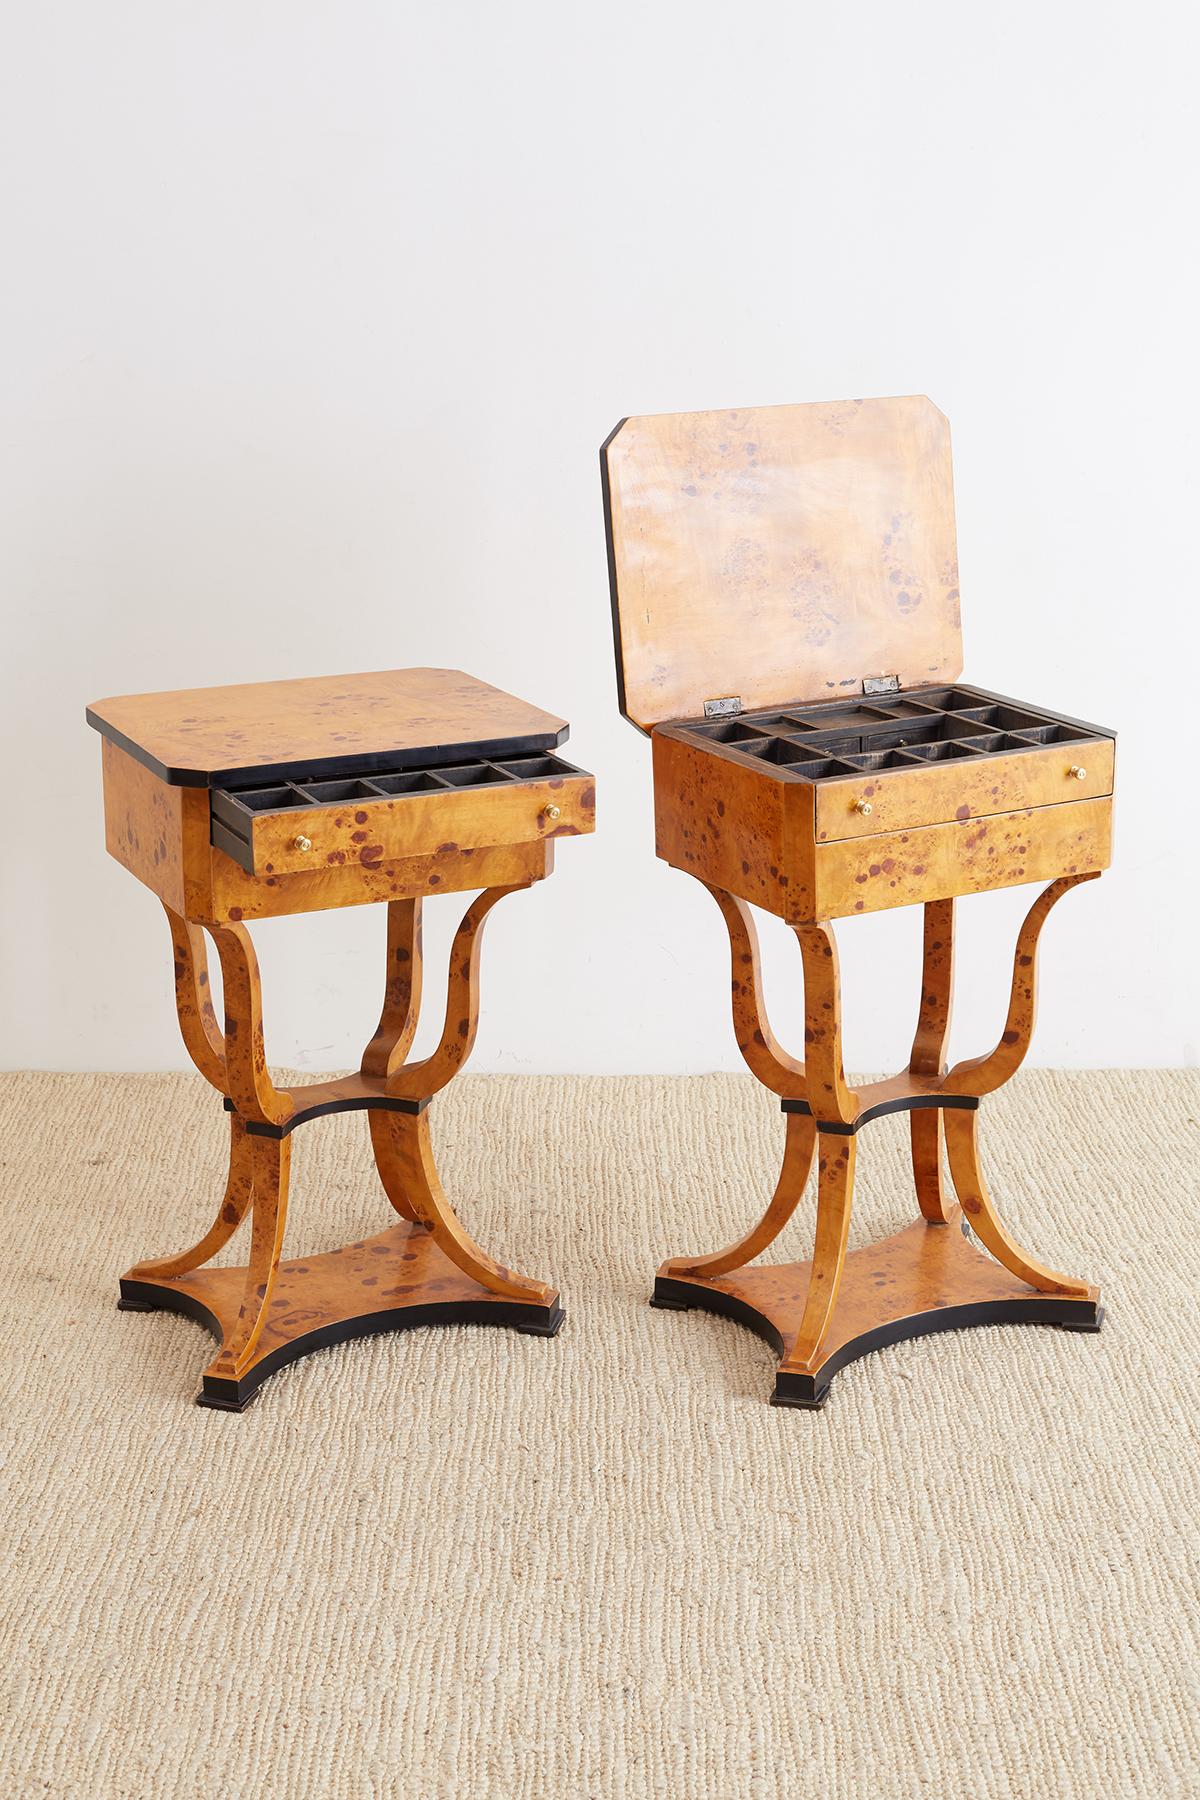 Pair of Swedish Biedermeier Style Sewing Table or Nightstands 1